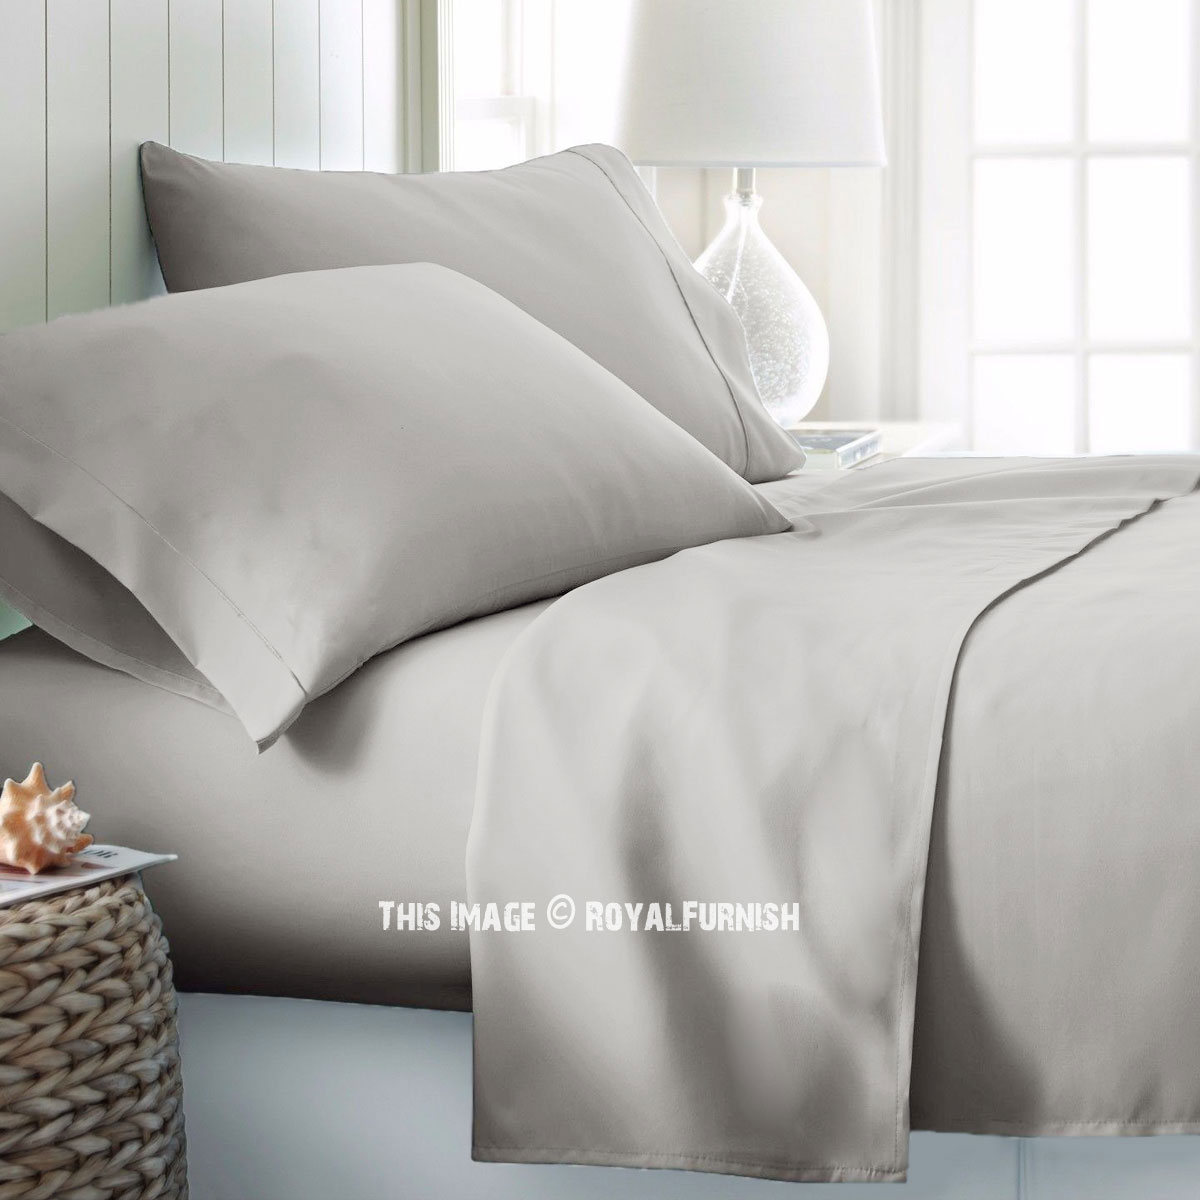 Light Grey 4Pc Cotton Bed Sheet Set 1 Flat Sheet, 1 Fitted Sheet